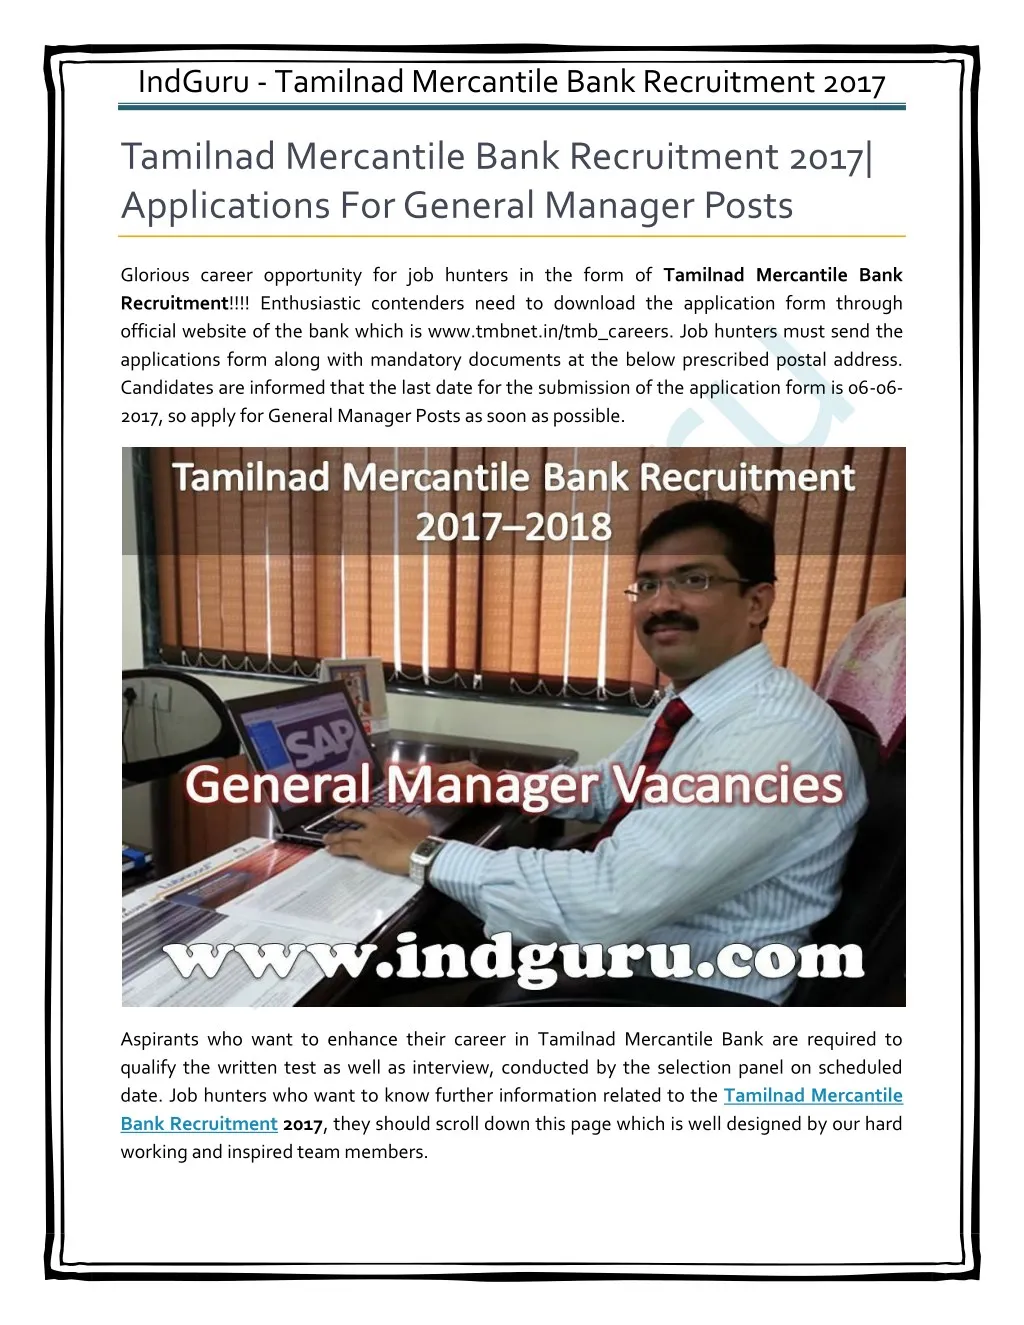 indguru tamilnad mercantile bank recruitment 2017